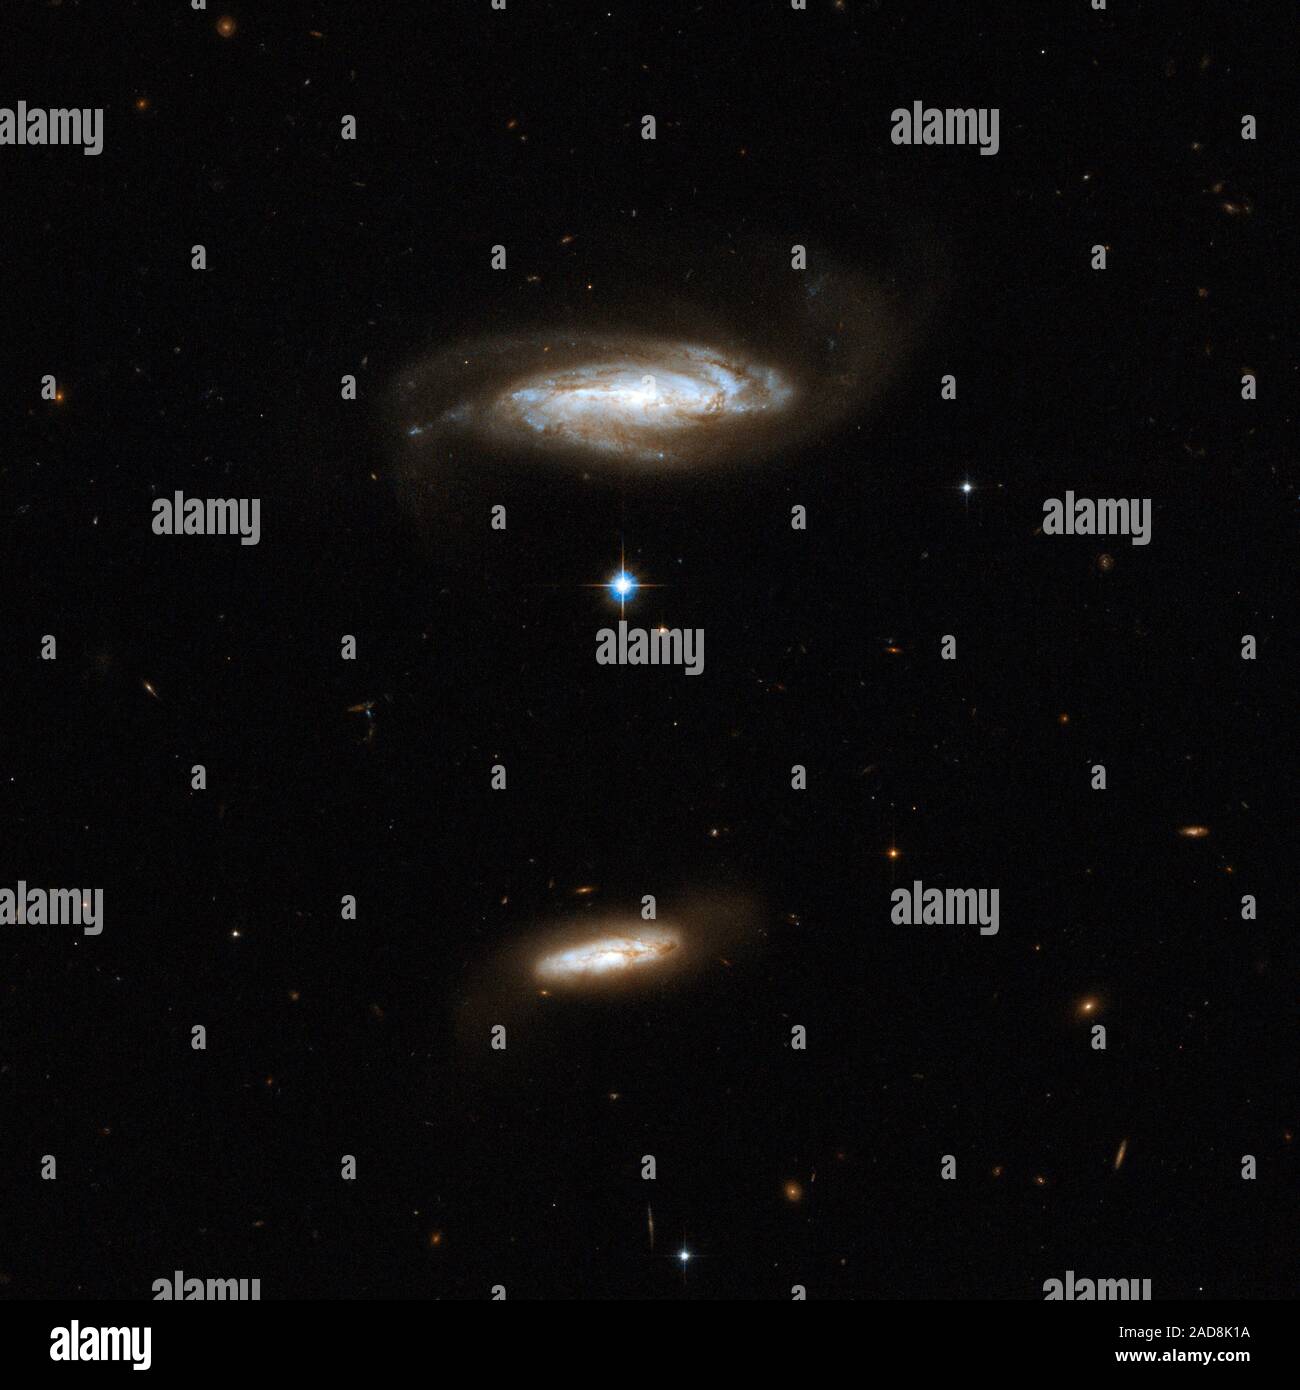 IC 2810 ist eine Galaxie gesehen fast der Kante. Es ist leicht gestört durch die gravitative Wechselwirkung mit einem kleineren, staubigen Begleiter (unten im Bild). Die größeren Galaxie zeigt blaue Knoten der Sternentstehung. Obwohl das Paar keine überlappenden Region hat derzeit ist es möglich, dass die beiden schließlich in die Zukunft kollidieren. IC 2810 im Sternbild Leo, der Löwe, etwa 450 Millionen Lichtjahre entfernt. Dieses Bild ist Teil einer großen Sammlung von 59 Bildern der verschmelzenden Galaxien, die das Hubble-Weltraumteleskop aufgenommen und anlässlich seines 18 anni freigegeben Stockfoto